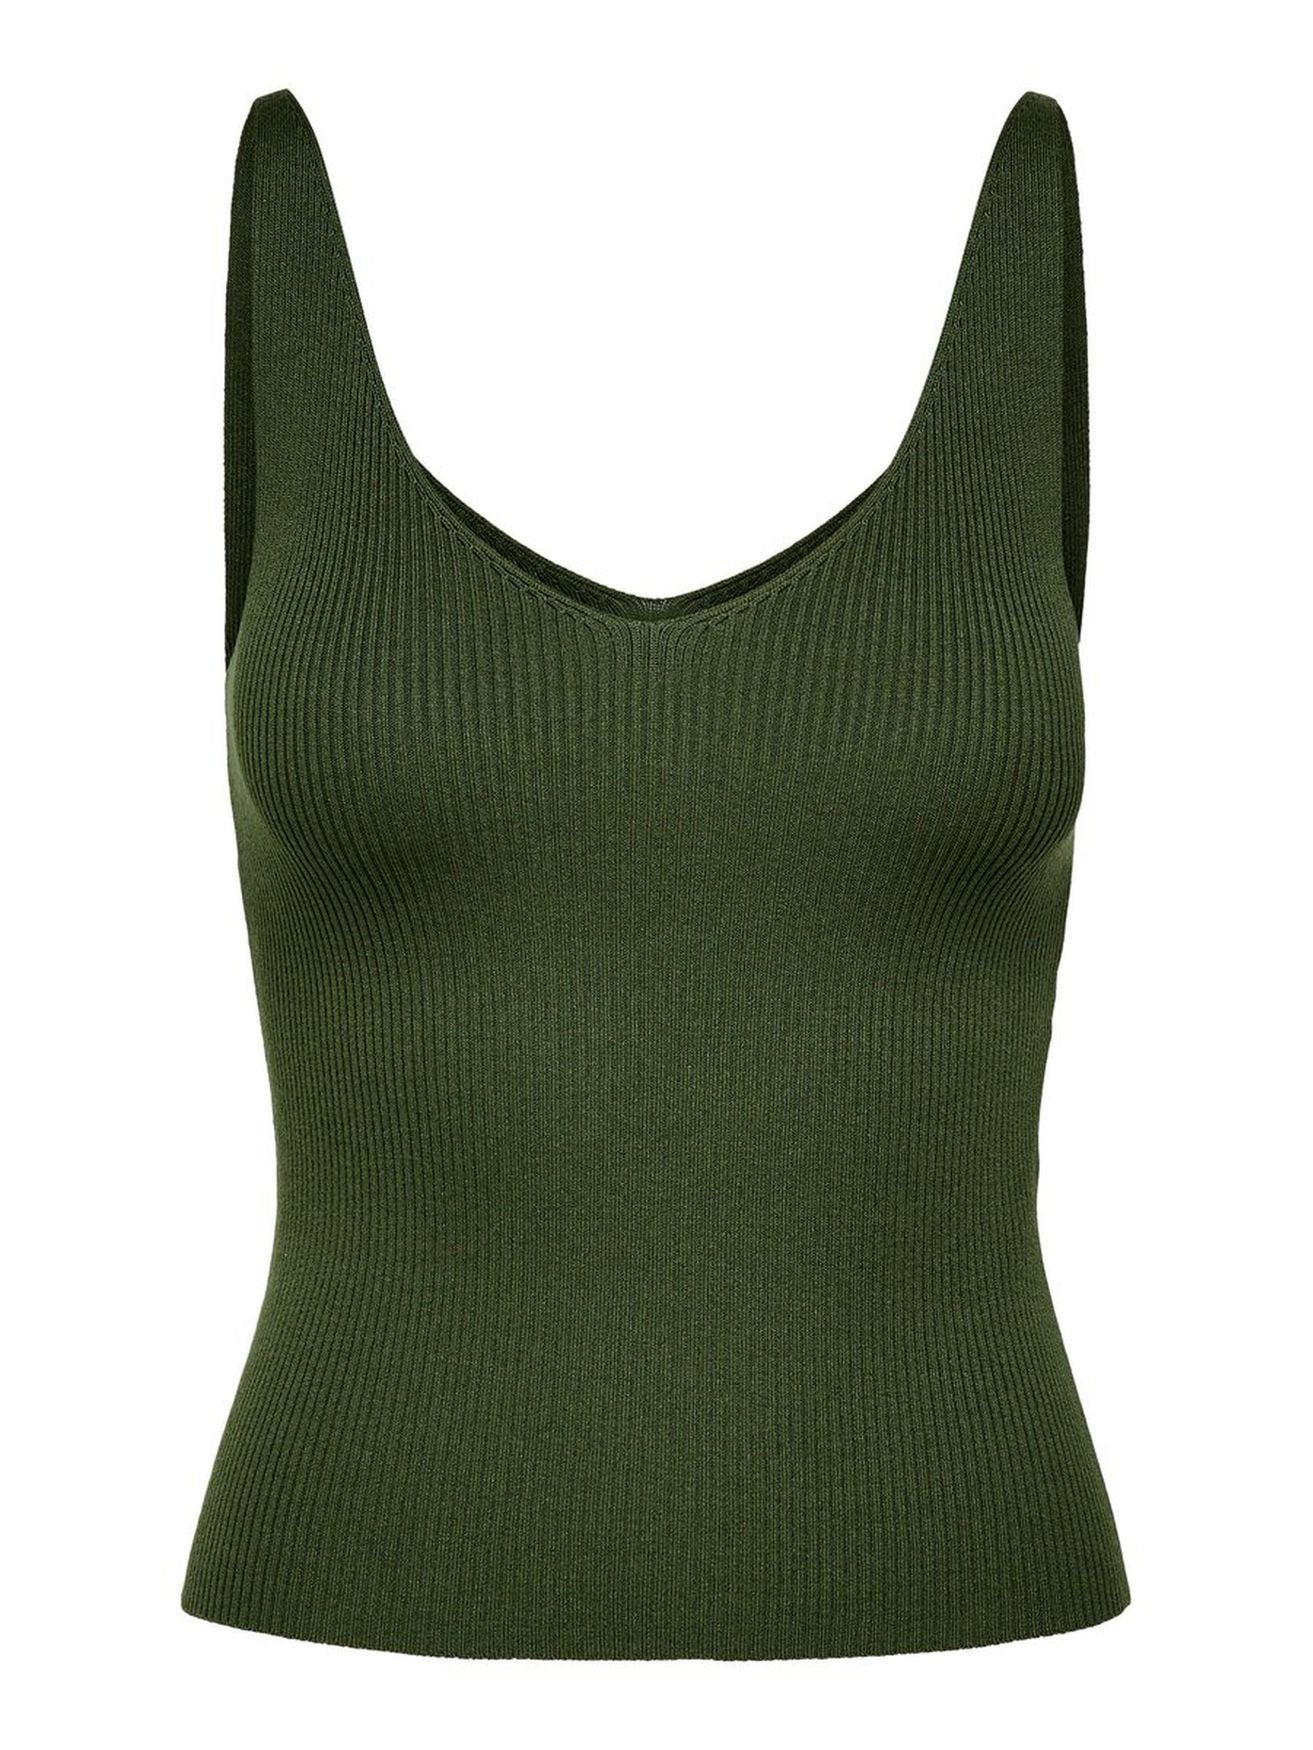 Ausschnitt Pullover Oberteil (1-tlg) Grün Shirt JACQUELINE JDYNANNA 3554 Top YONG de Shirttop Tank V-neck in